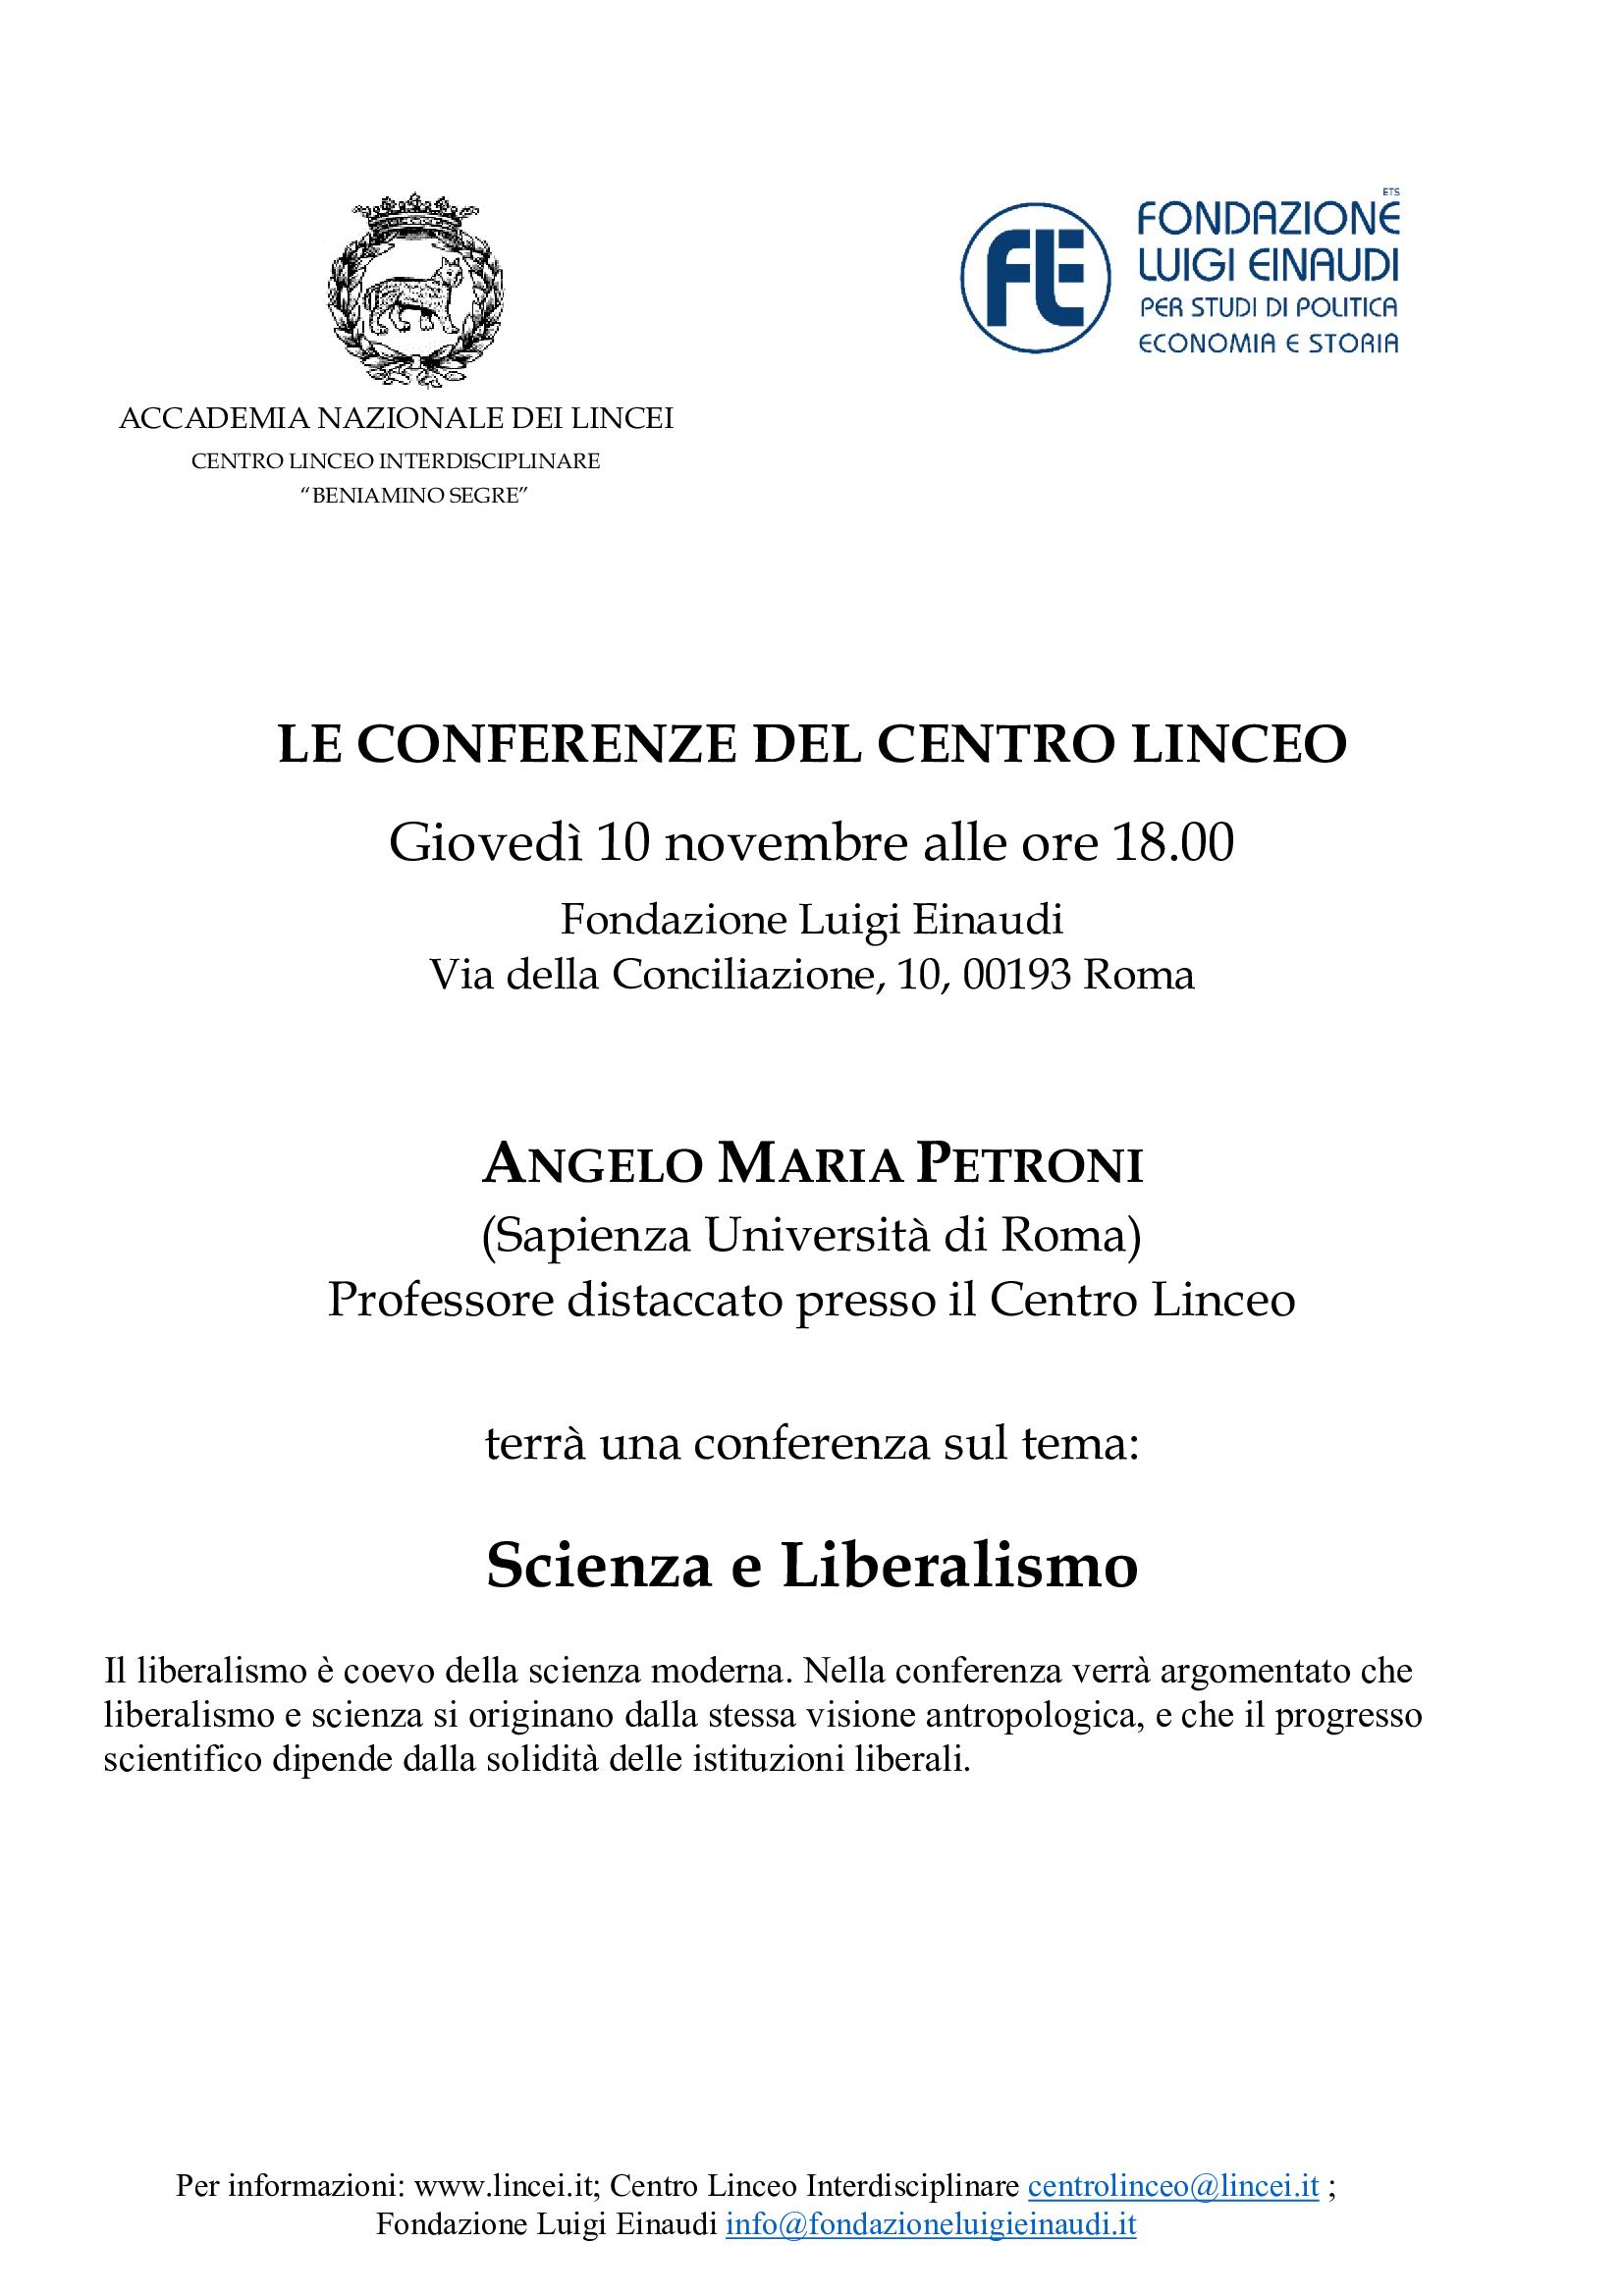 Conferenza “Scienza e Liberalismo”